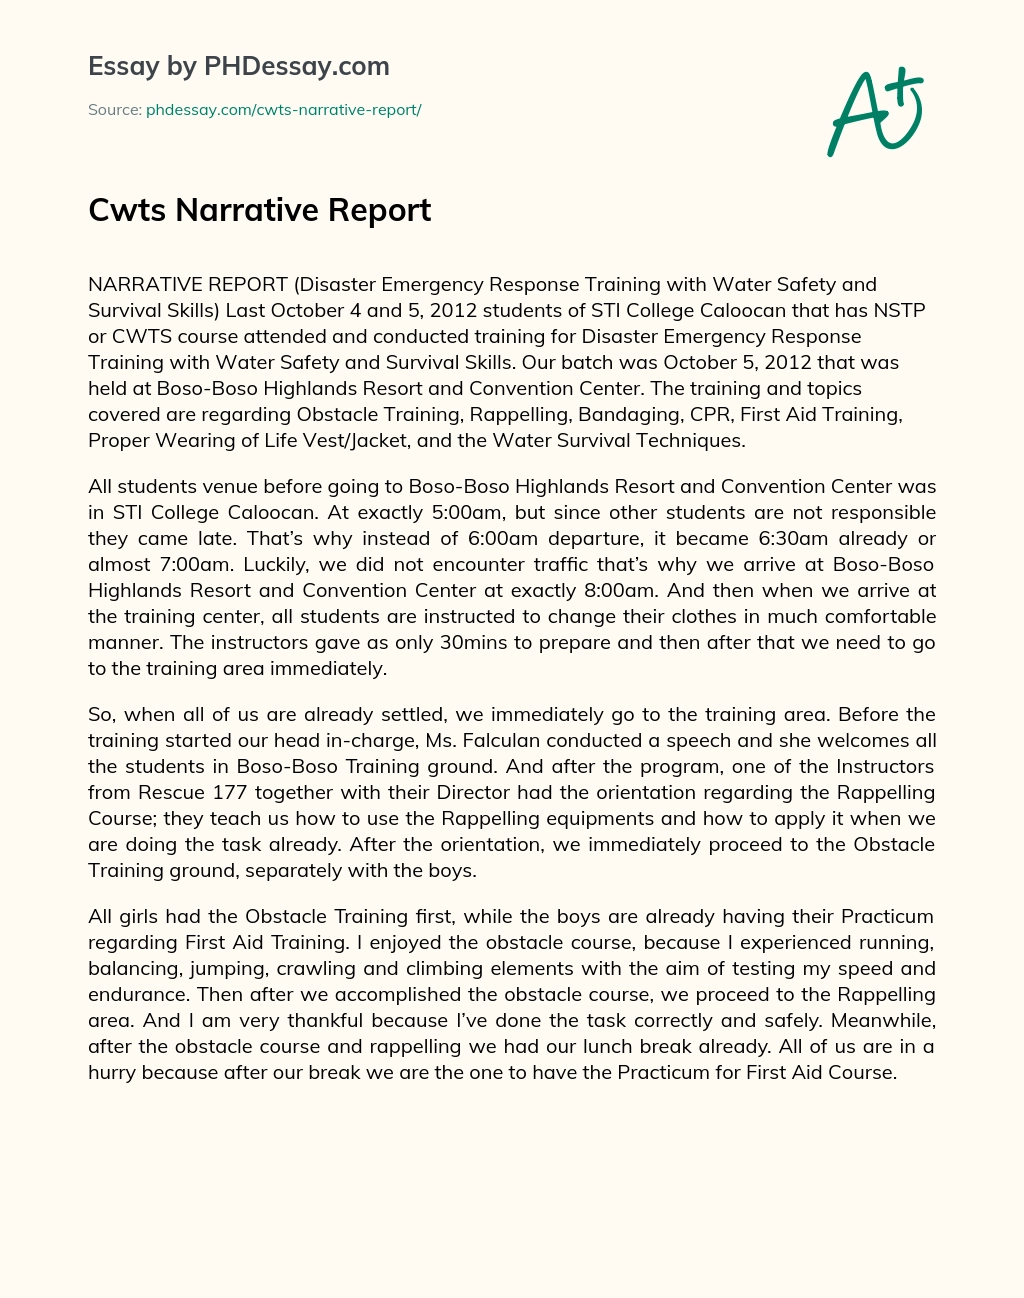 Cwts Narrative Report essay